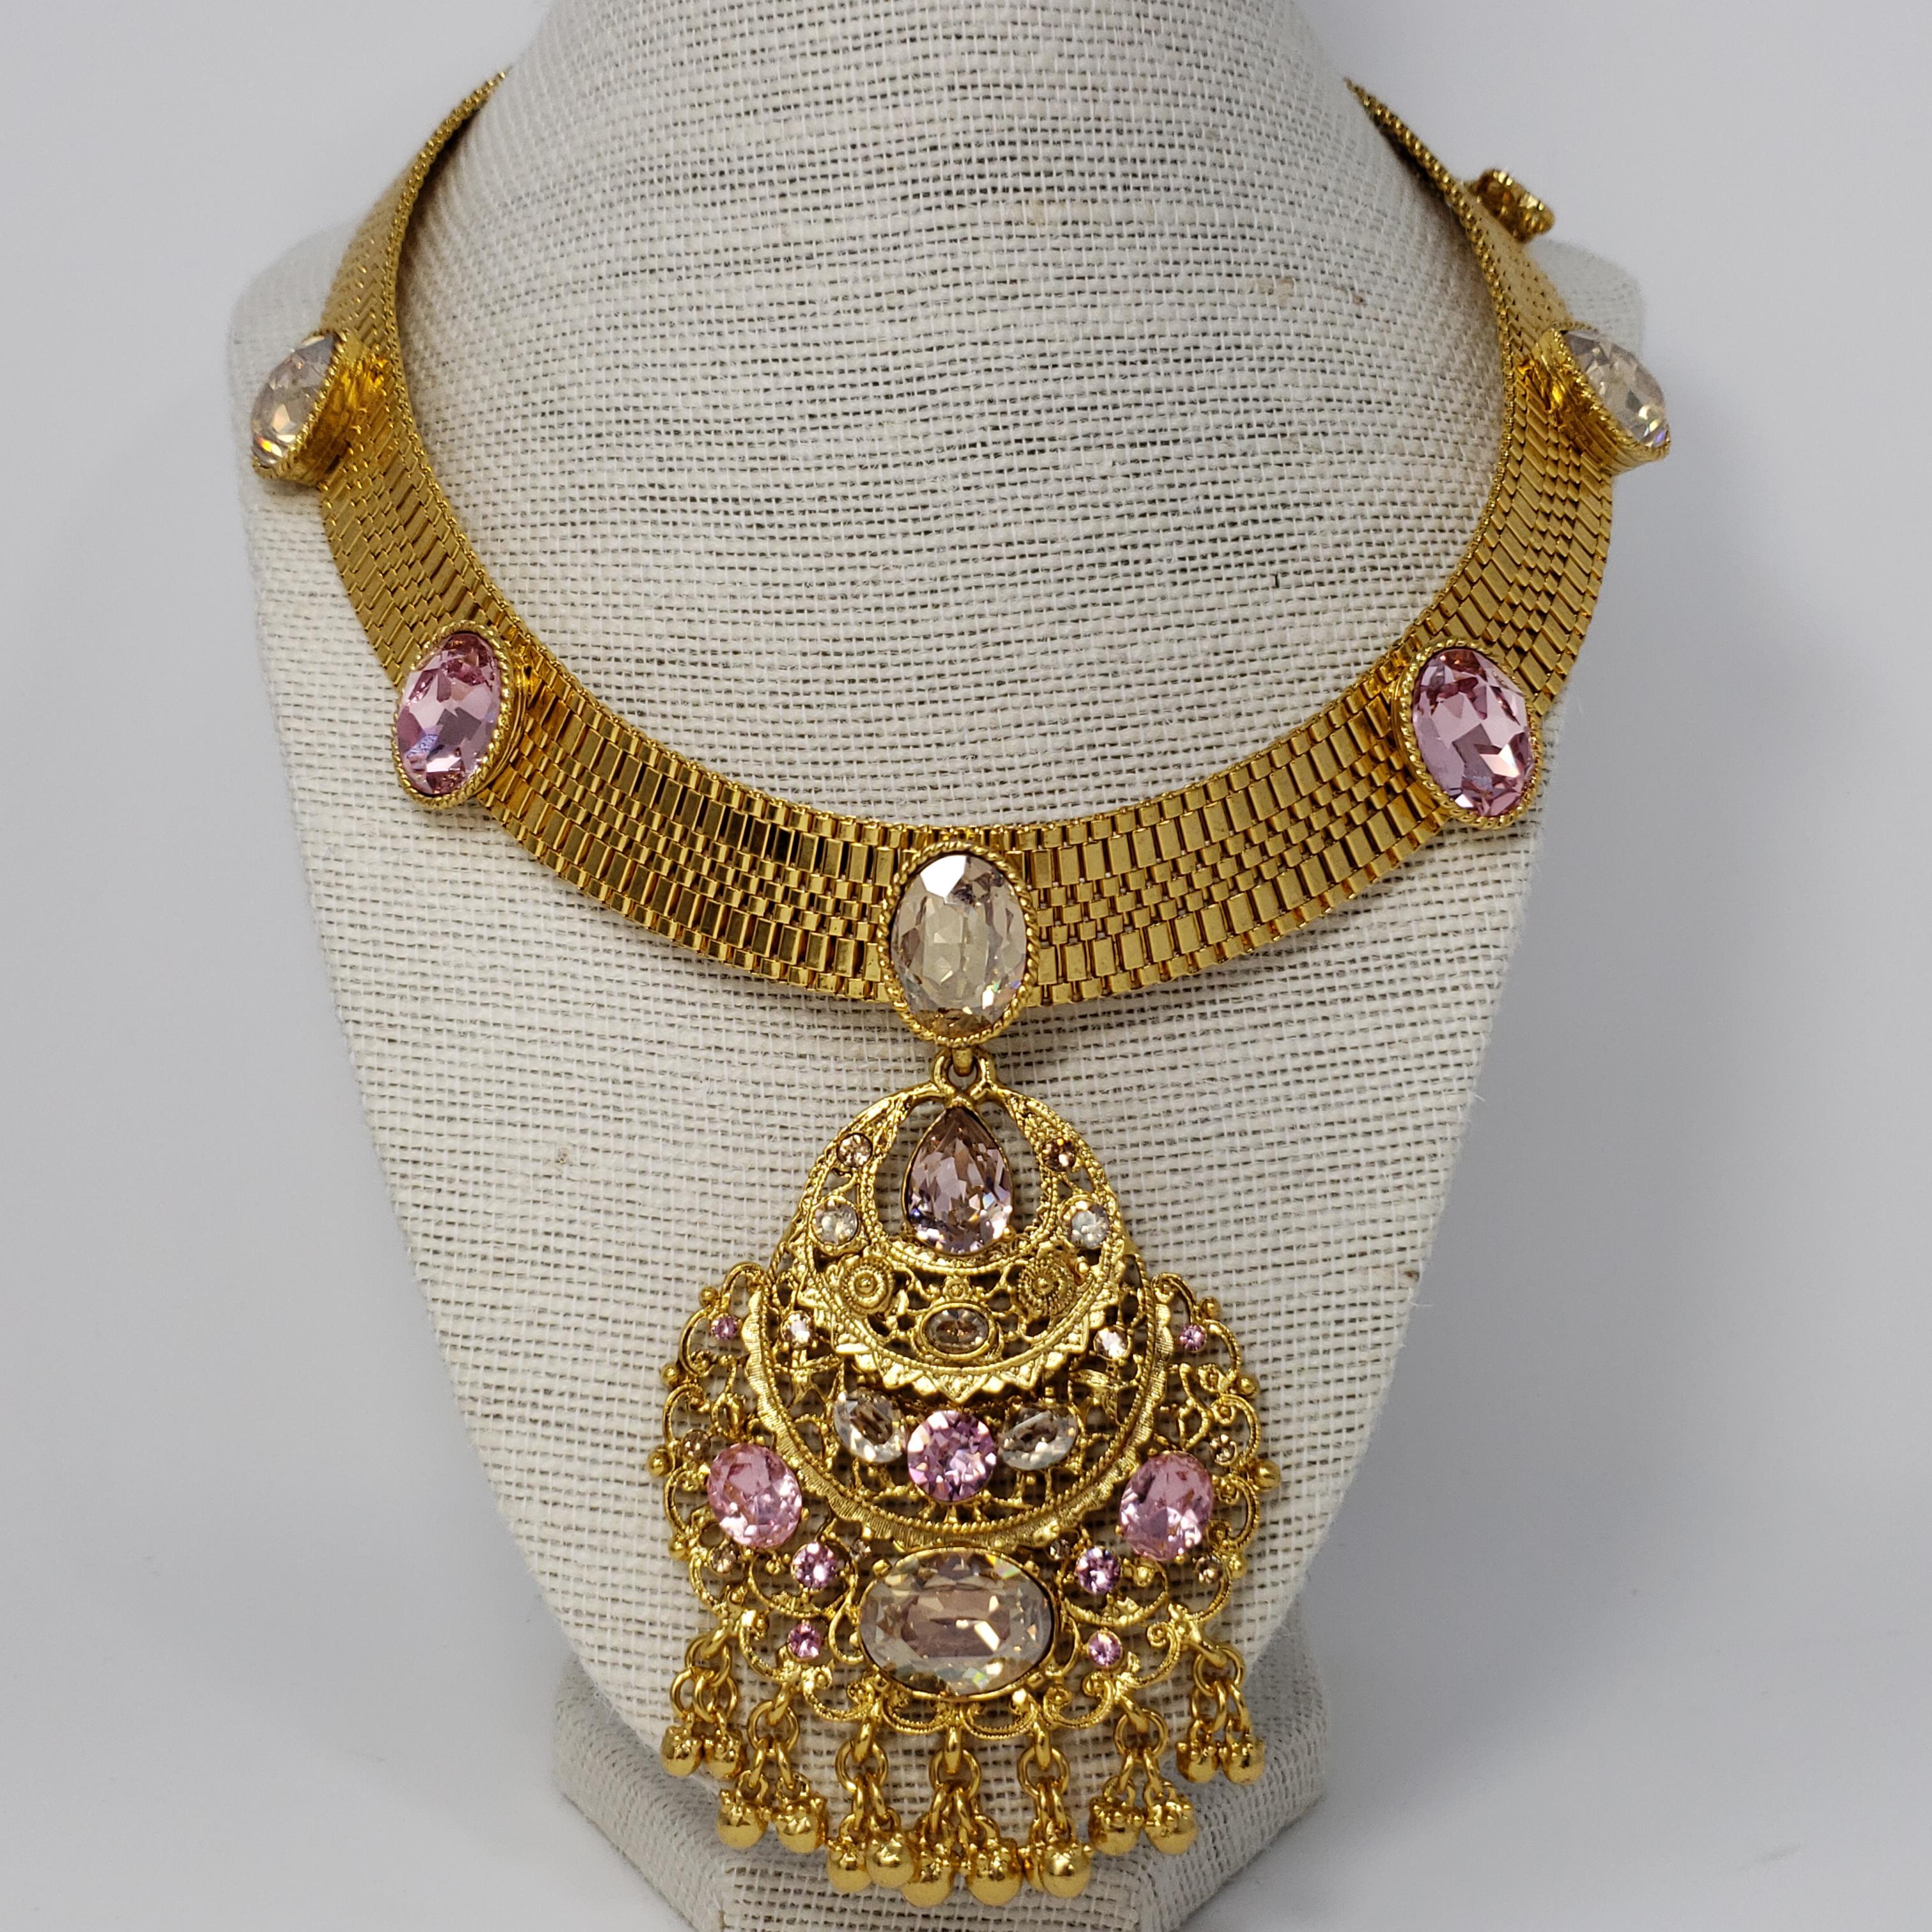 Eine Halskette aus Mesh von Oscar de la Renta. Der Anhänger im viktorianischen Stil ist mit funkelnden Kristallen verziert.

Markenzeichen: Oscar de la Renta, Hergestellt in den USA
Länge: 41 cm / 16.25 in plus 9 cm / 3.5 in